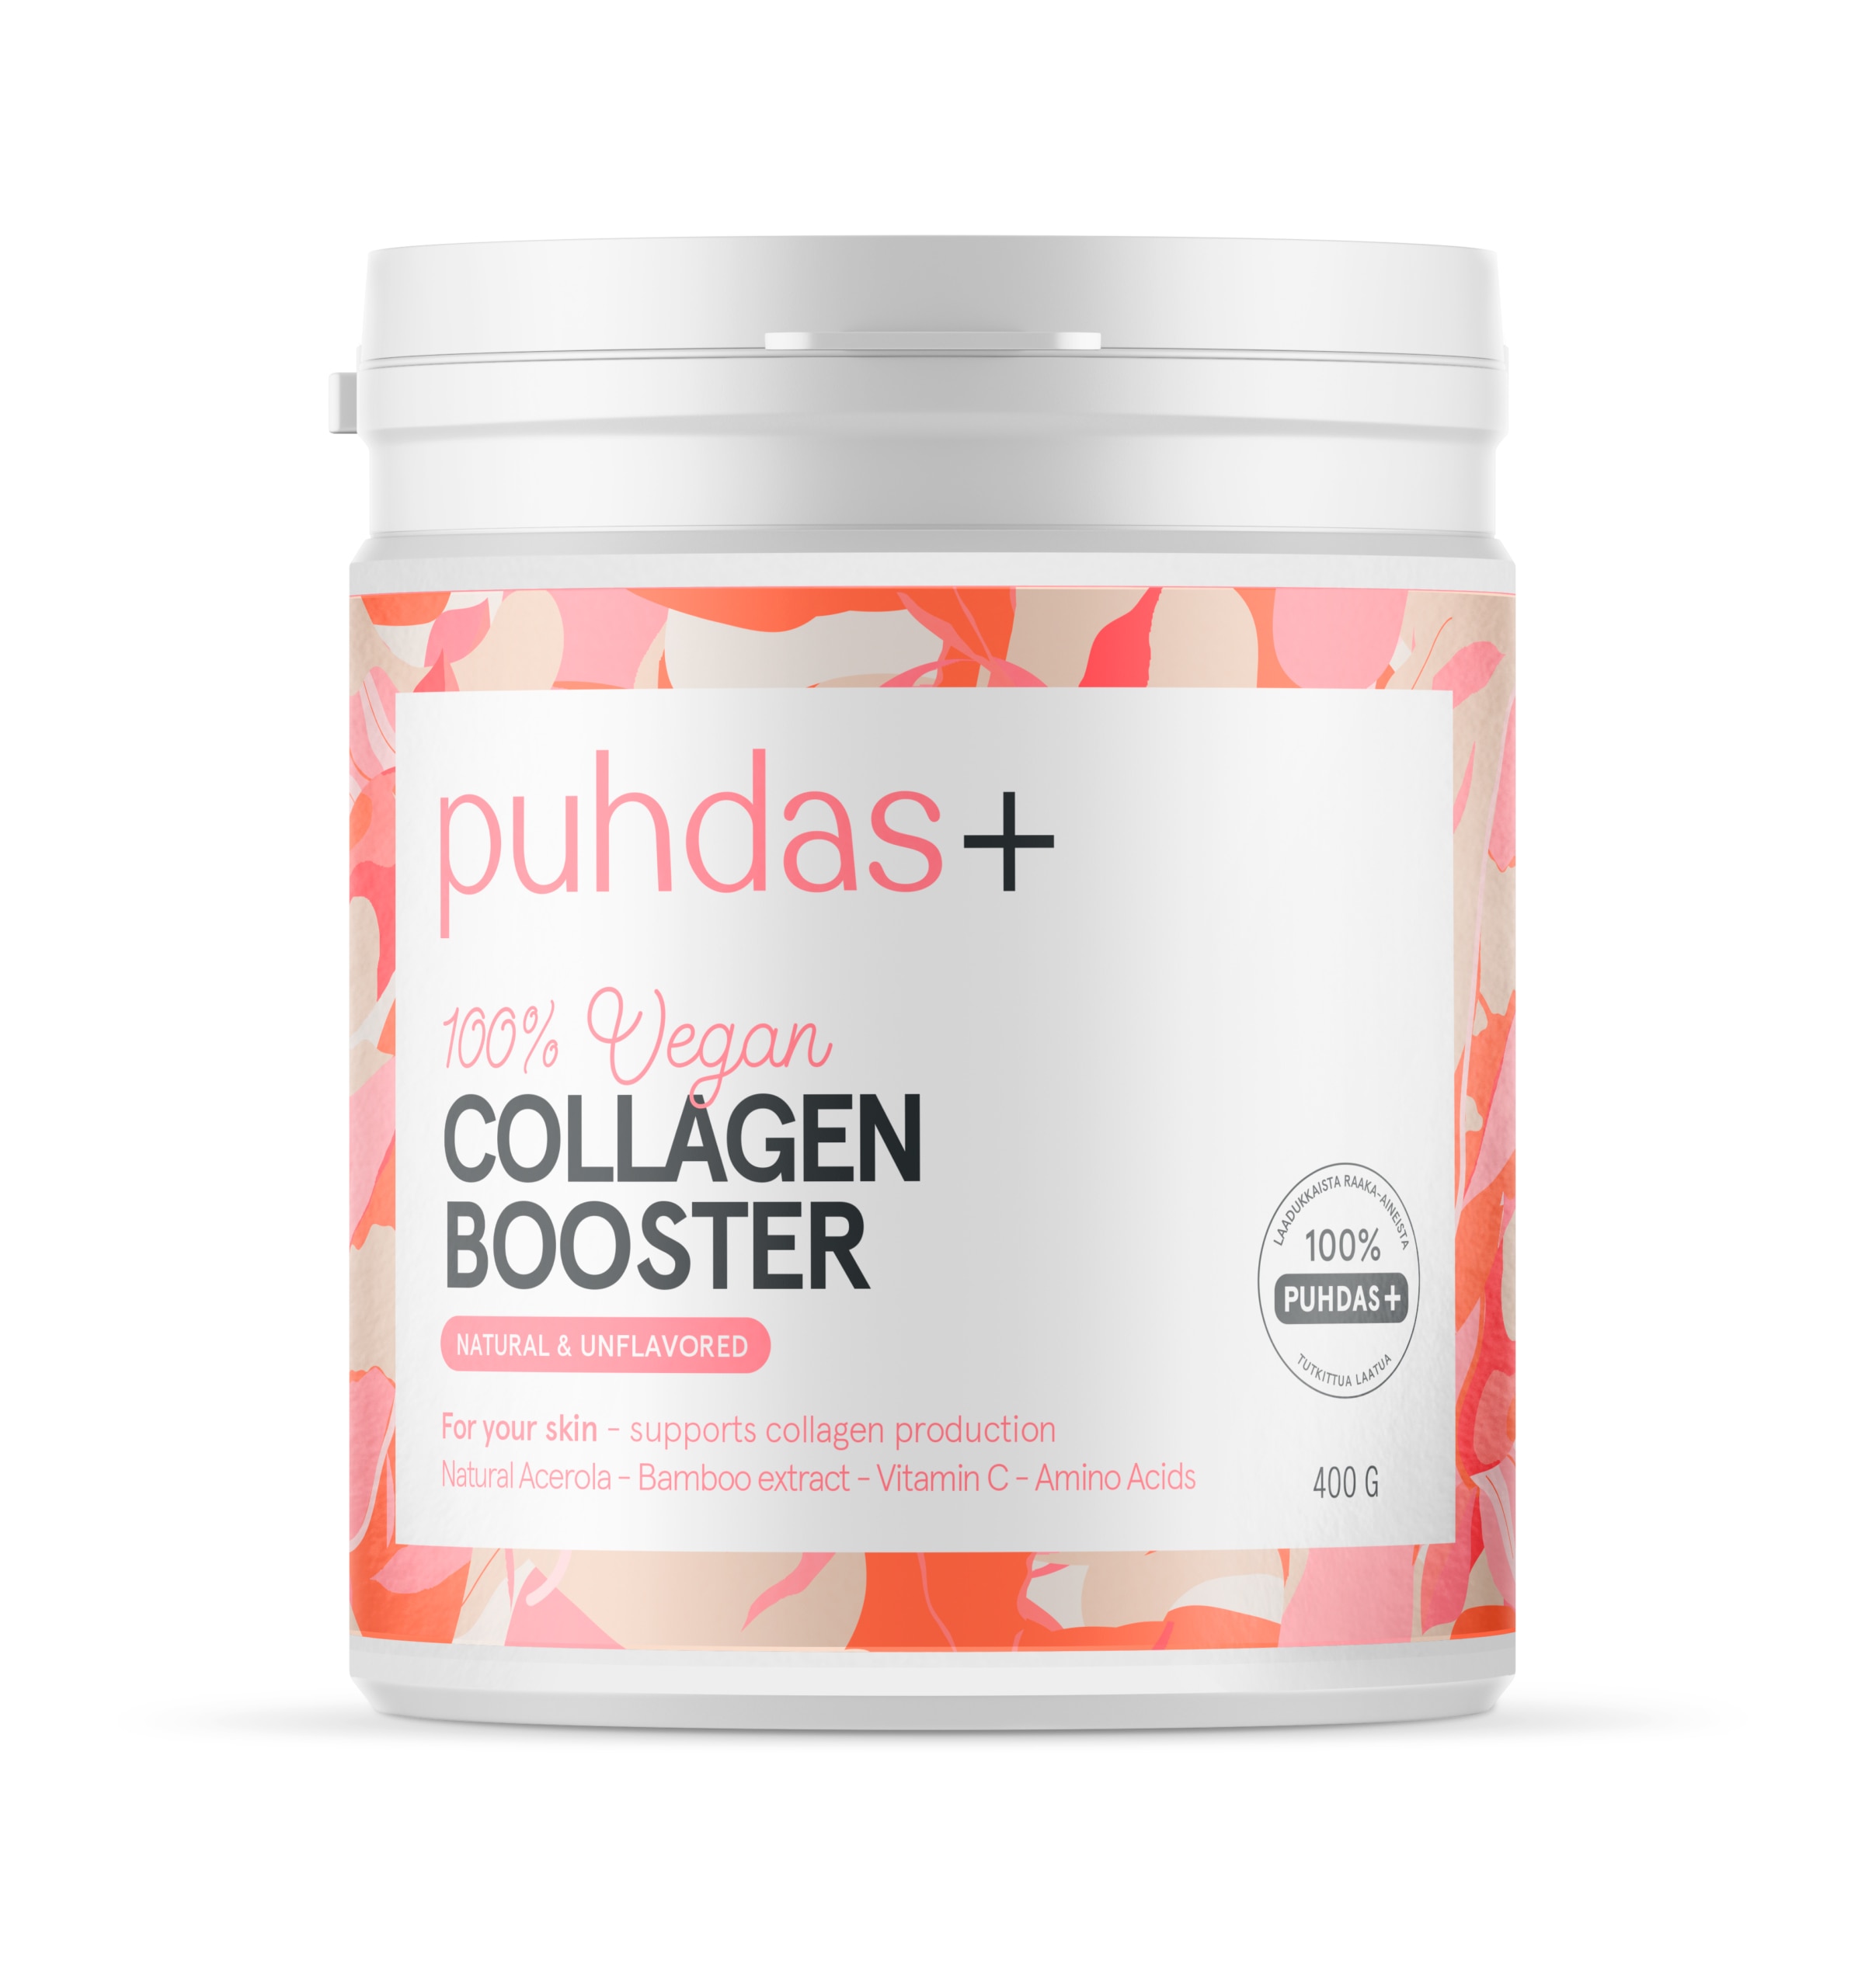 Puhdas+ Collagen Booster 100 % Vegan Natural 